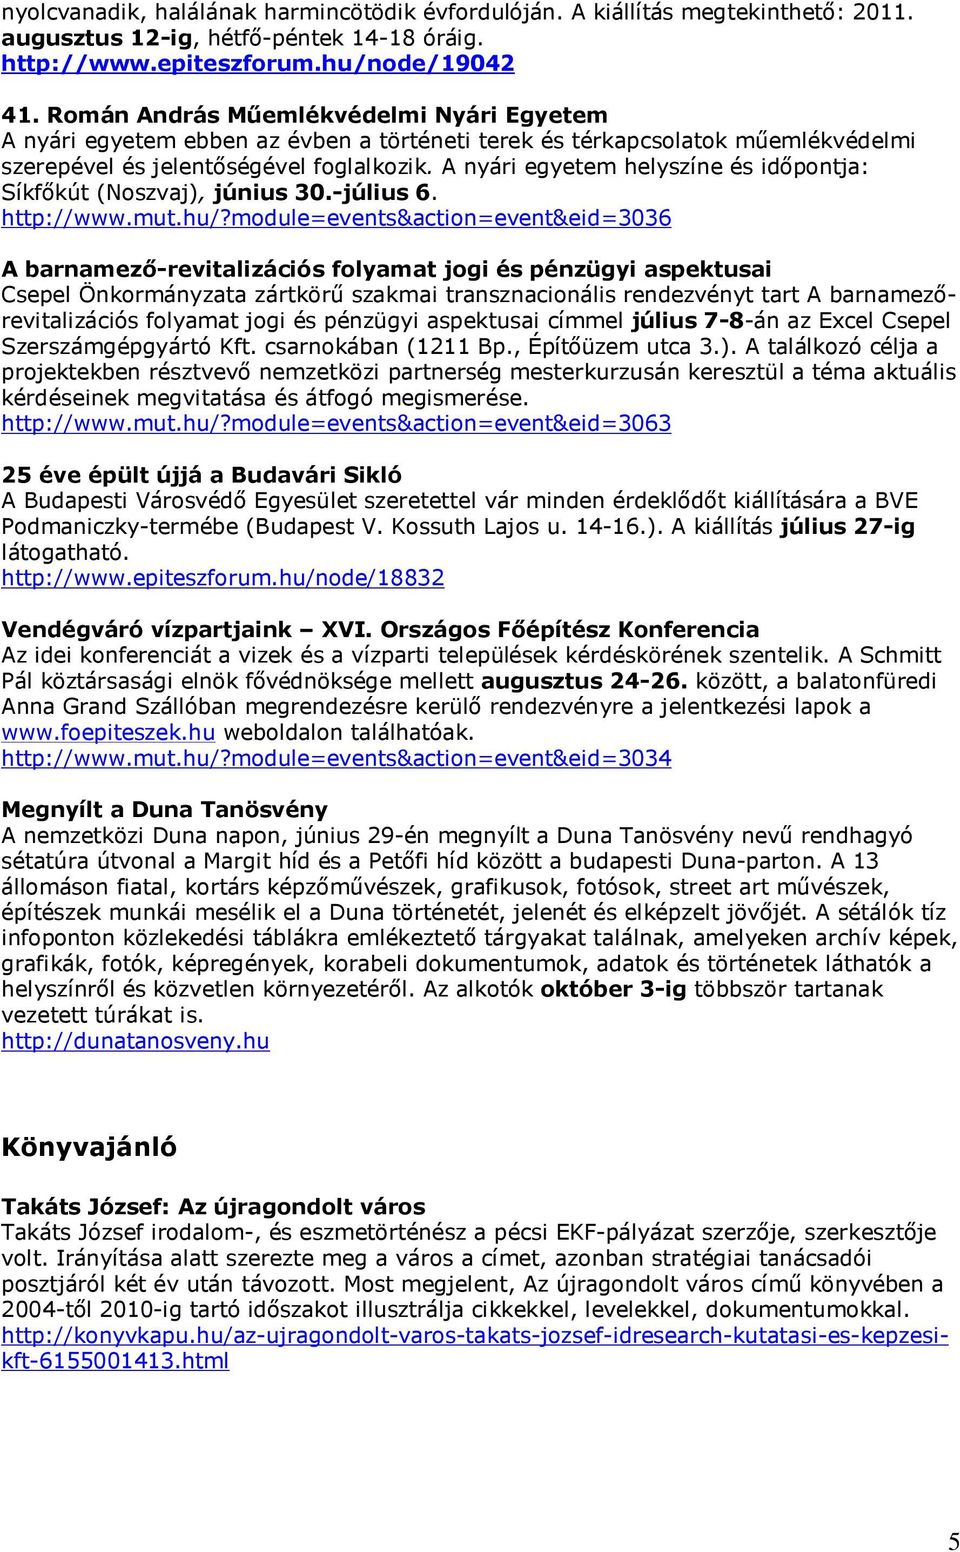 A nyári egyetem helyszíne és időpontja: Síkfőkút (Noszvaj), június 30.-július 6. http://www.mut.hu/?